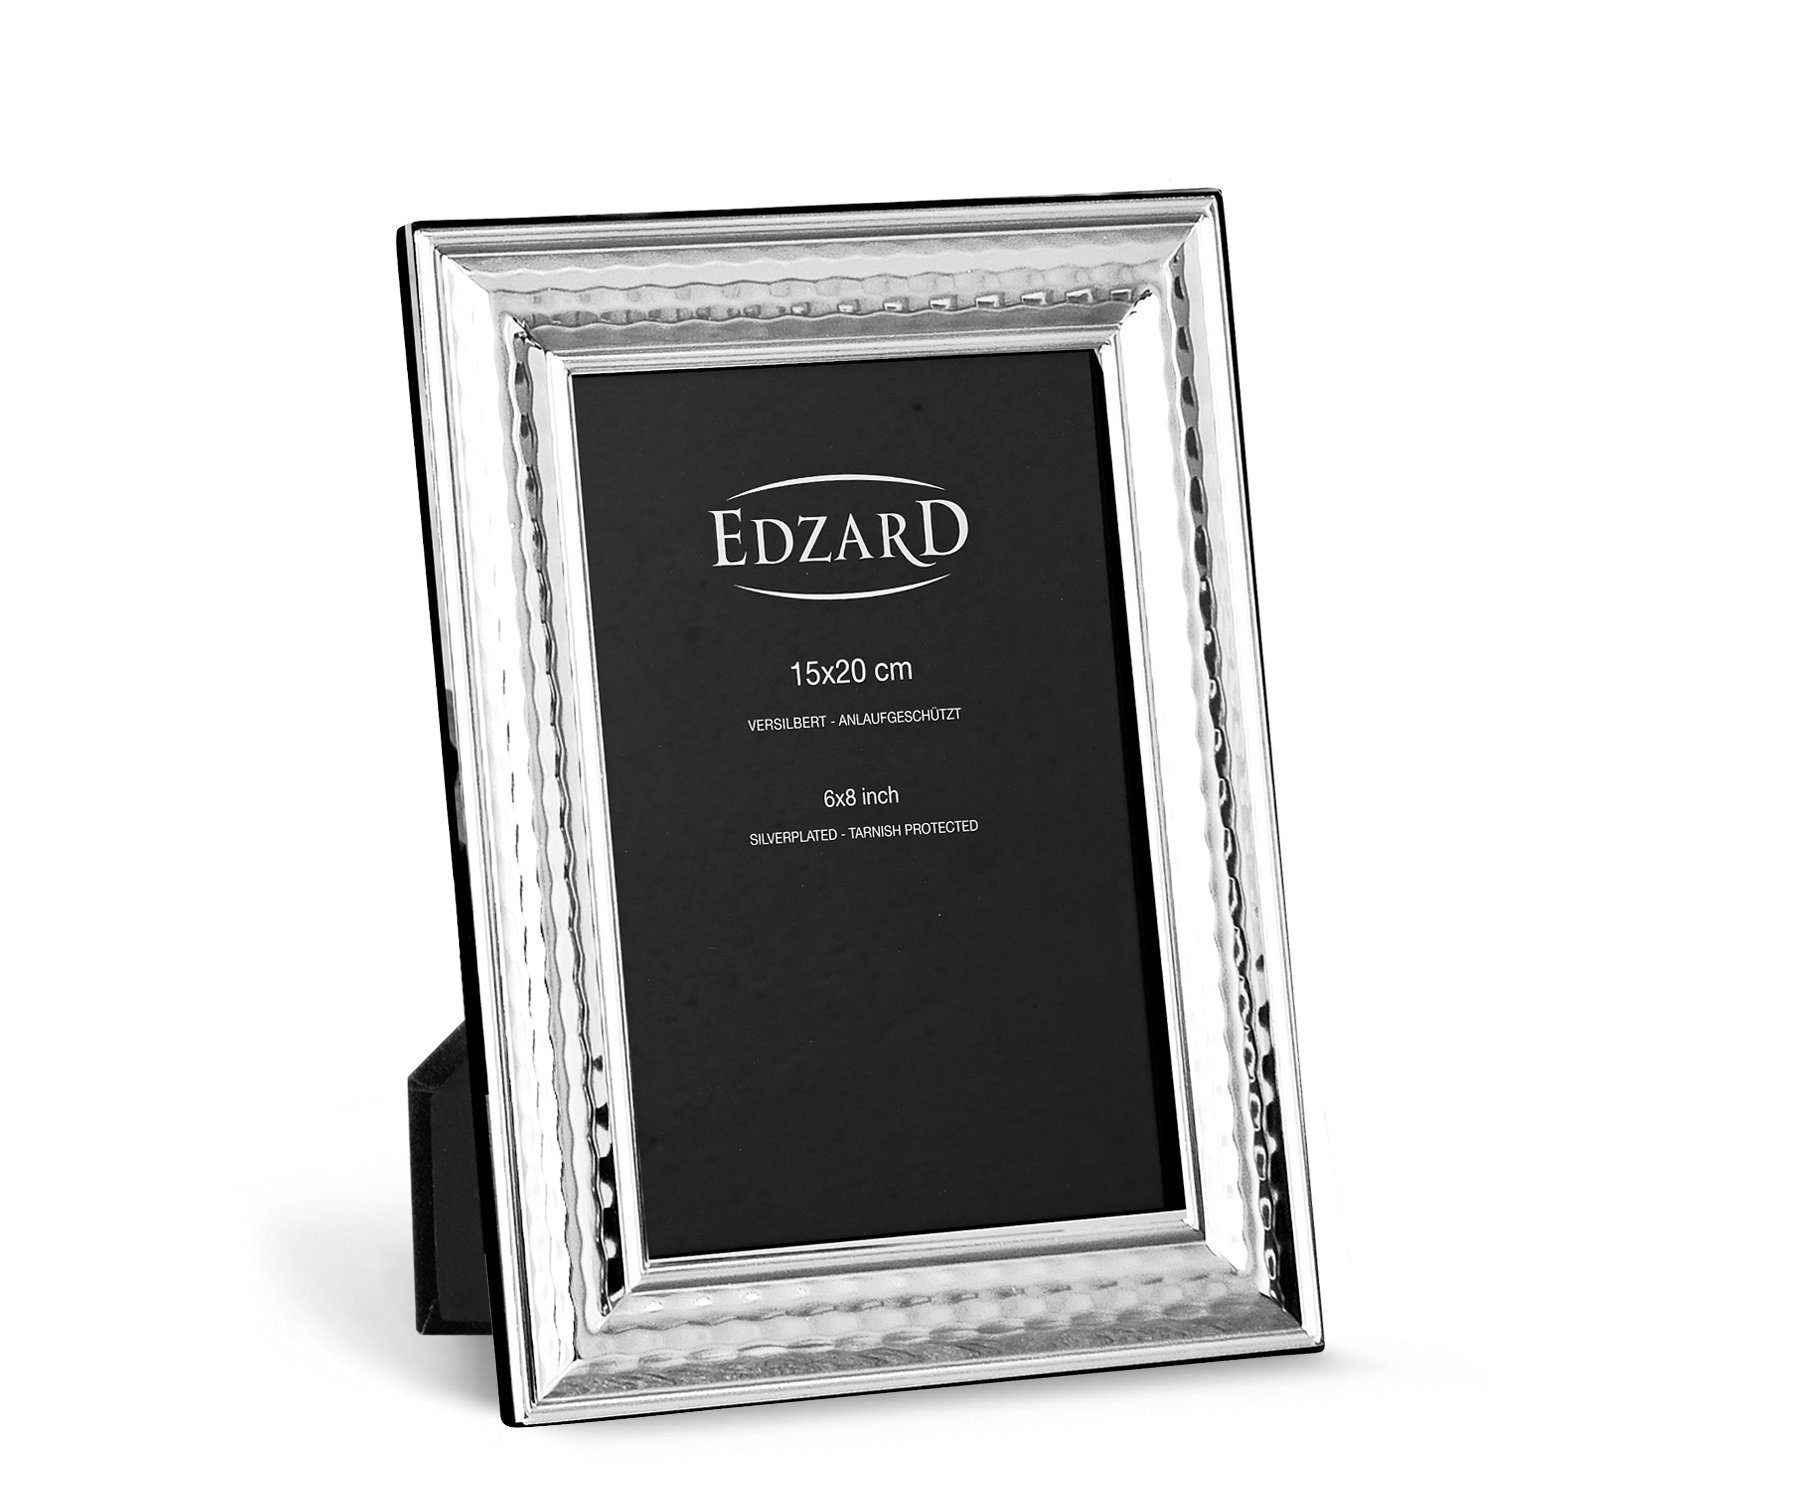 EDZARD Bilderrahmen Urbino, versilbert und anlaufgeschützt, für 15x20 cm Foto